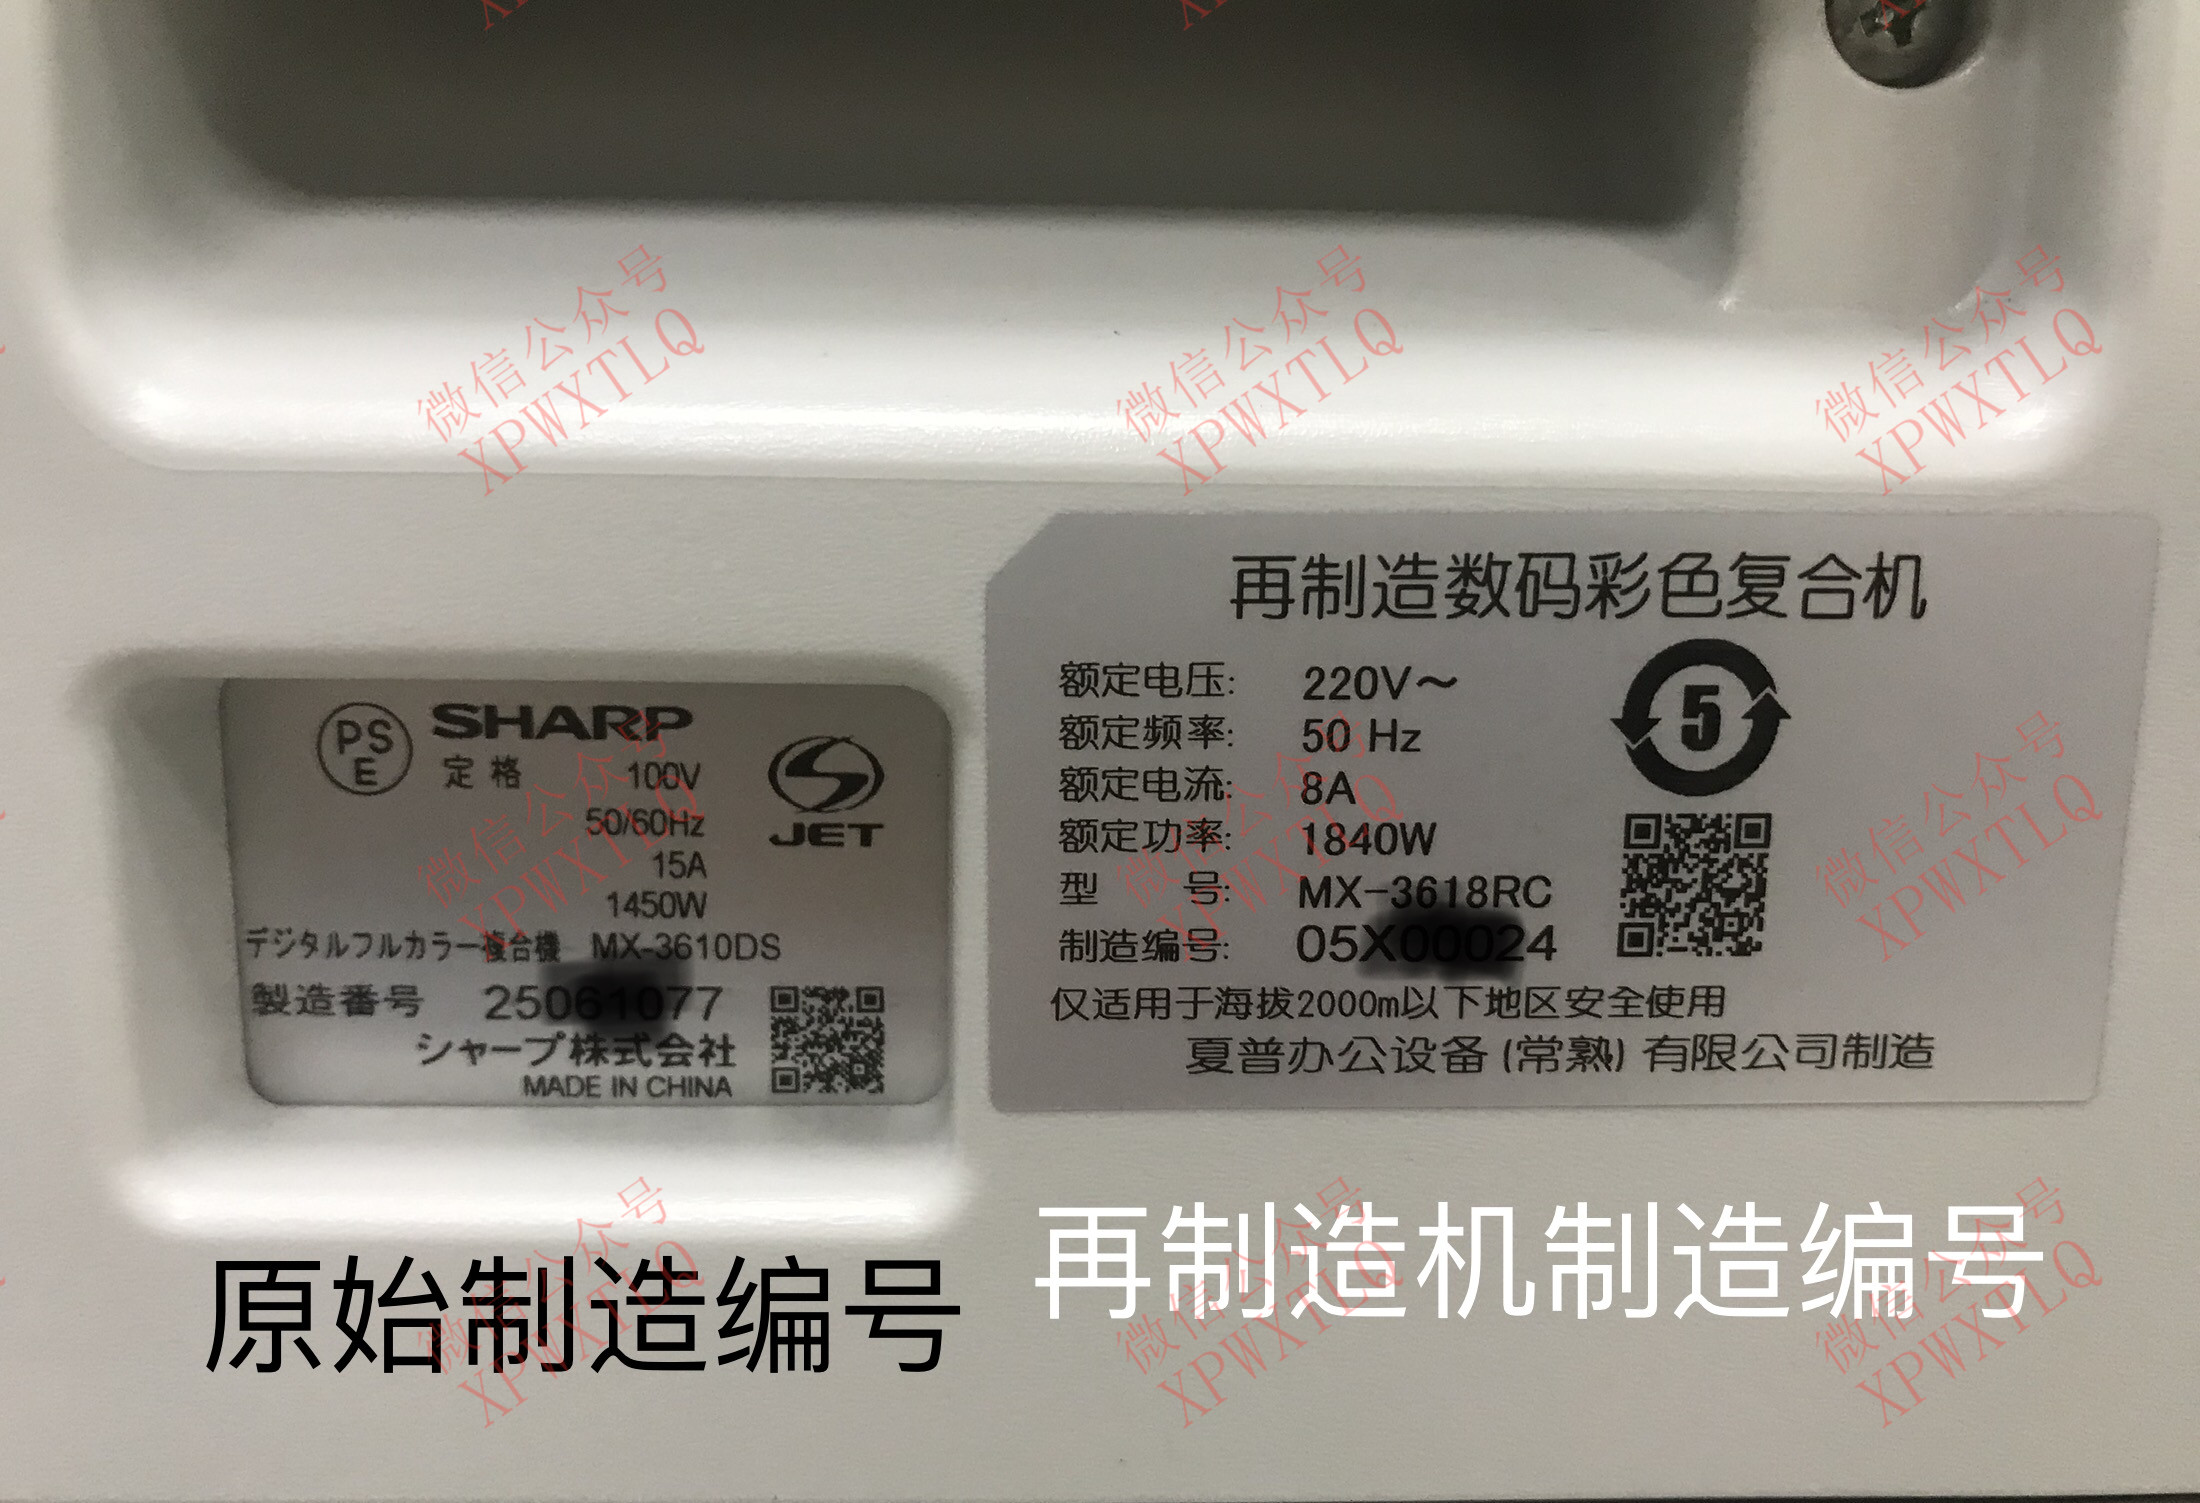 下载 | 夏普 Sharp MX-C4081RV, 打印释放设置指南 | PDF文档 | 手册365